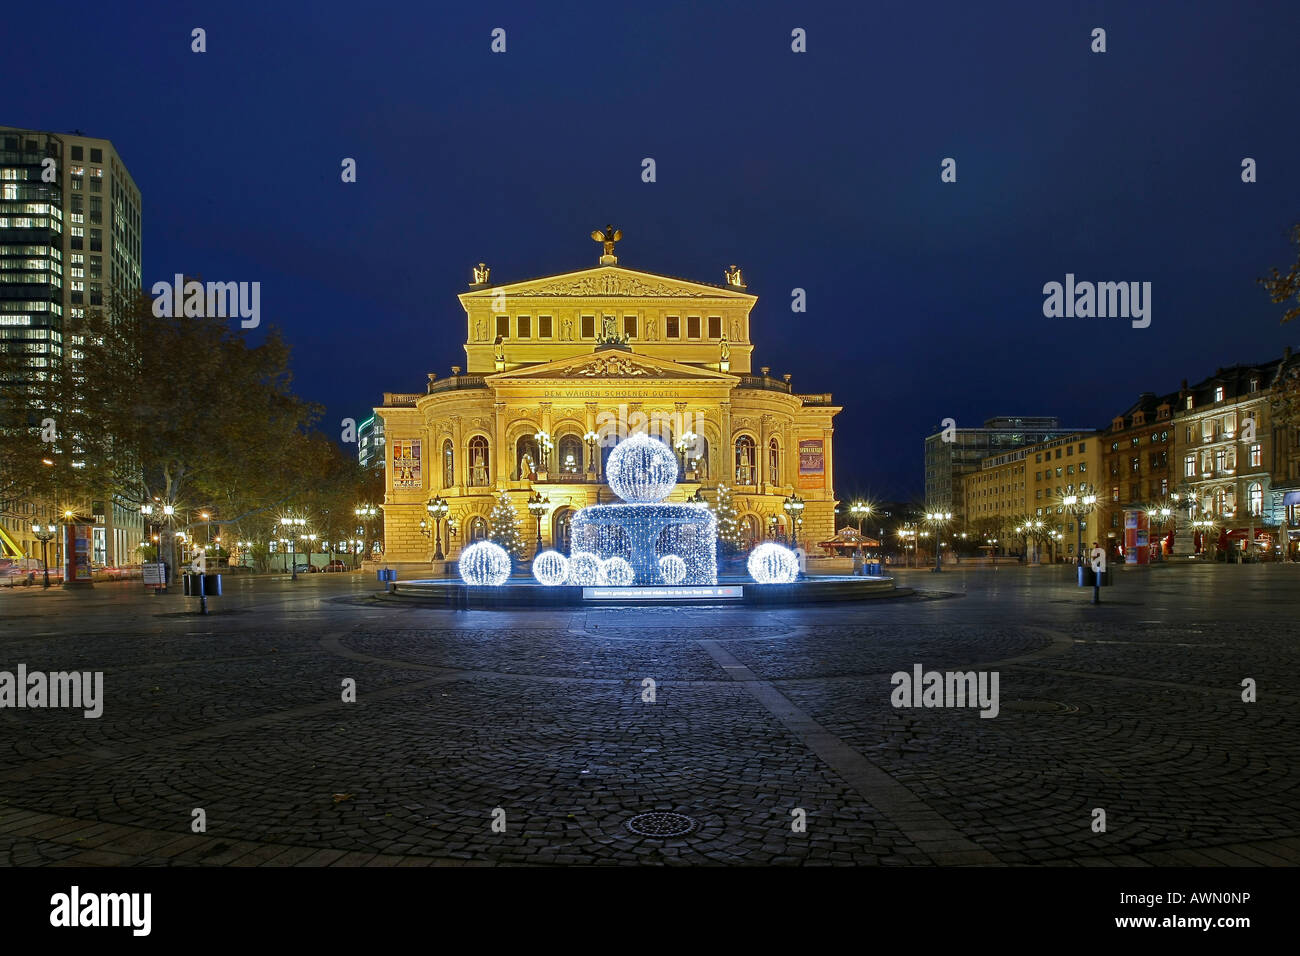 Alte Oper (Antigua Ópera) con la iluminación especial de Navidad de la fuente, Frankfurt, Hesse, Alemania Foto de stock